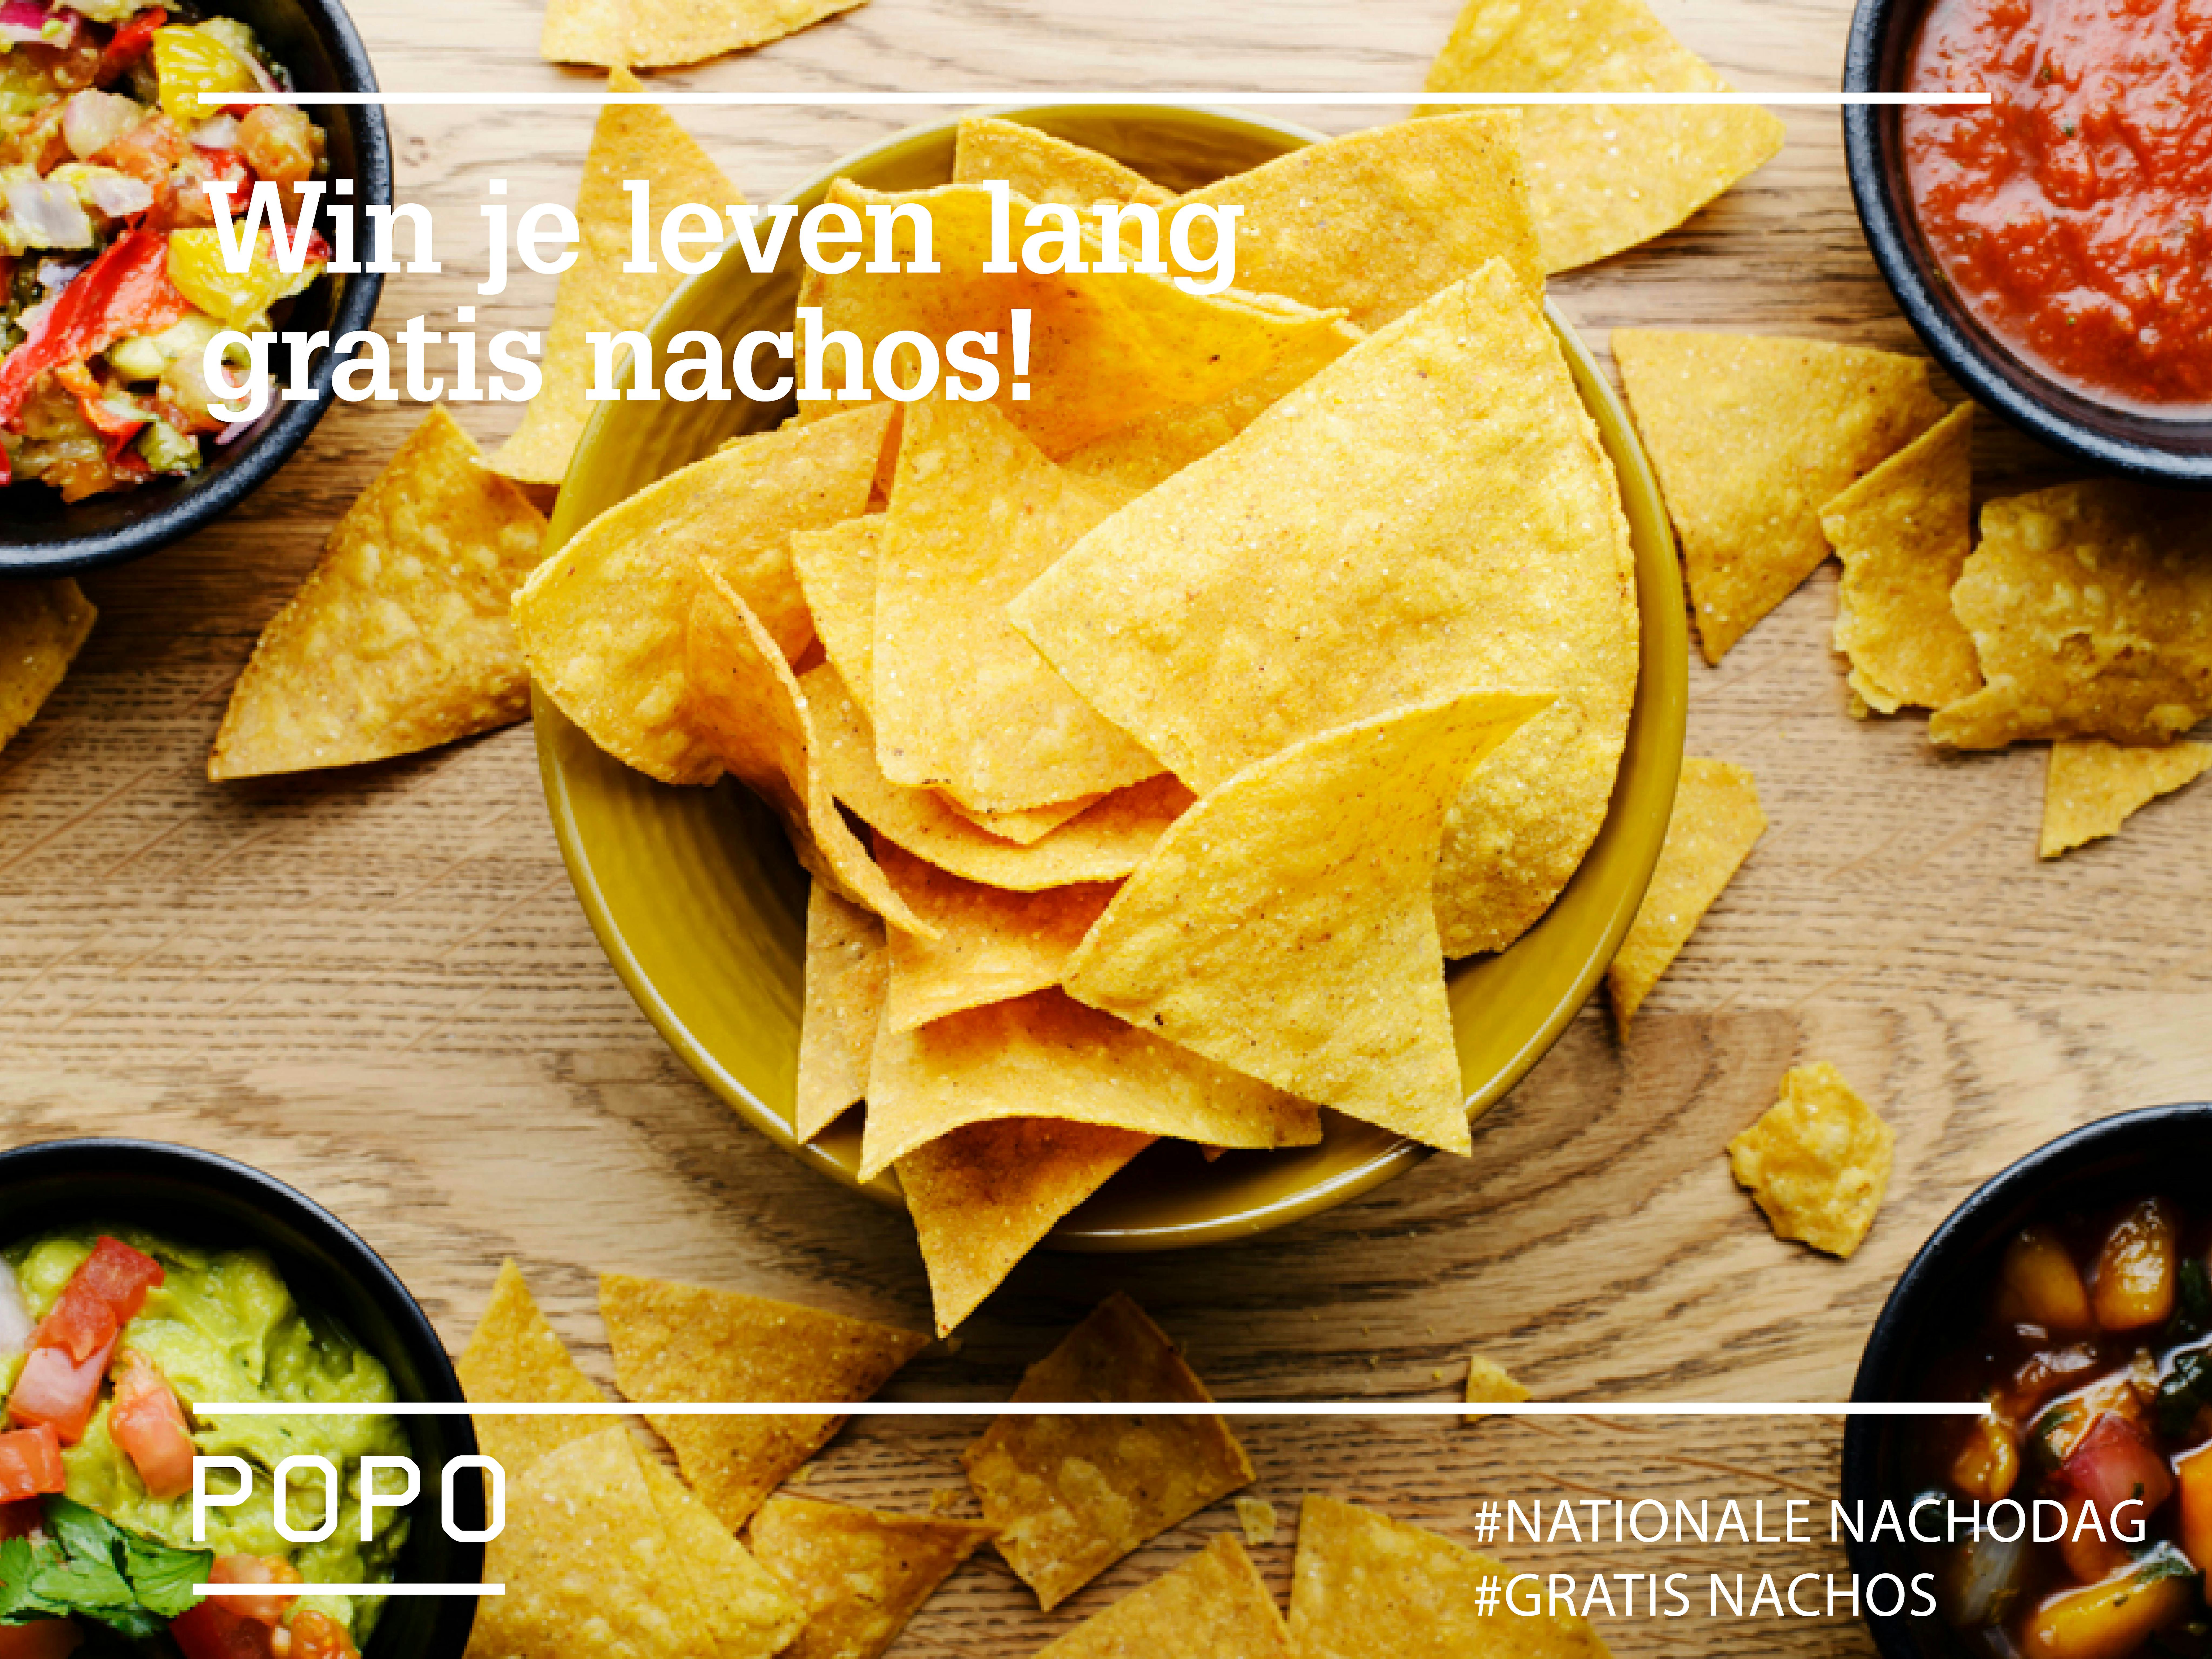 Popocatepetl geeft 'Leven lang gratis nacho's' weg